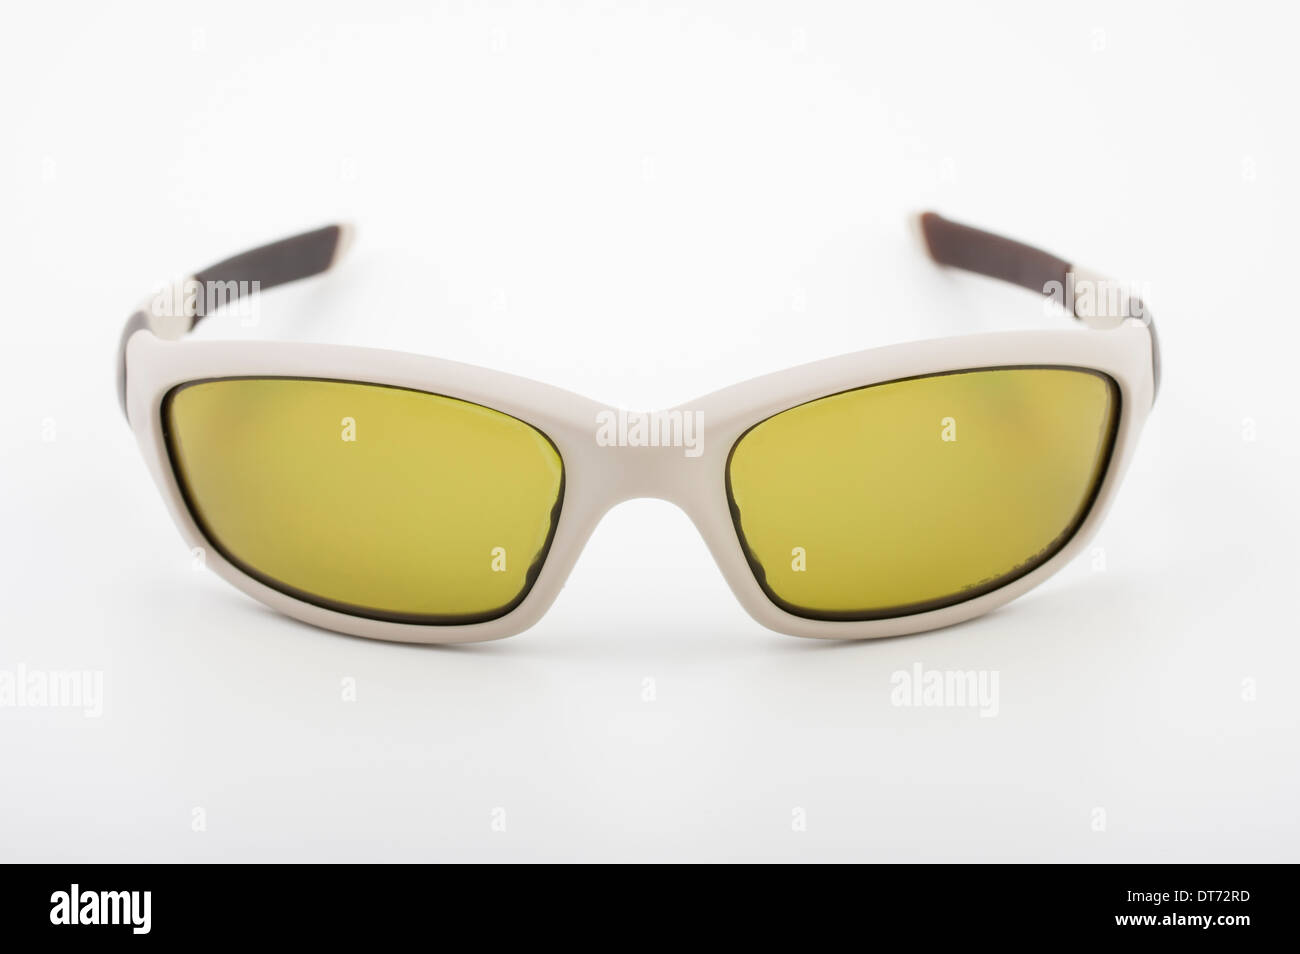 Oakley giacca diritta Occhiali da sole giallo con lenti polarizzate Foto Stock